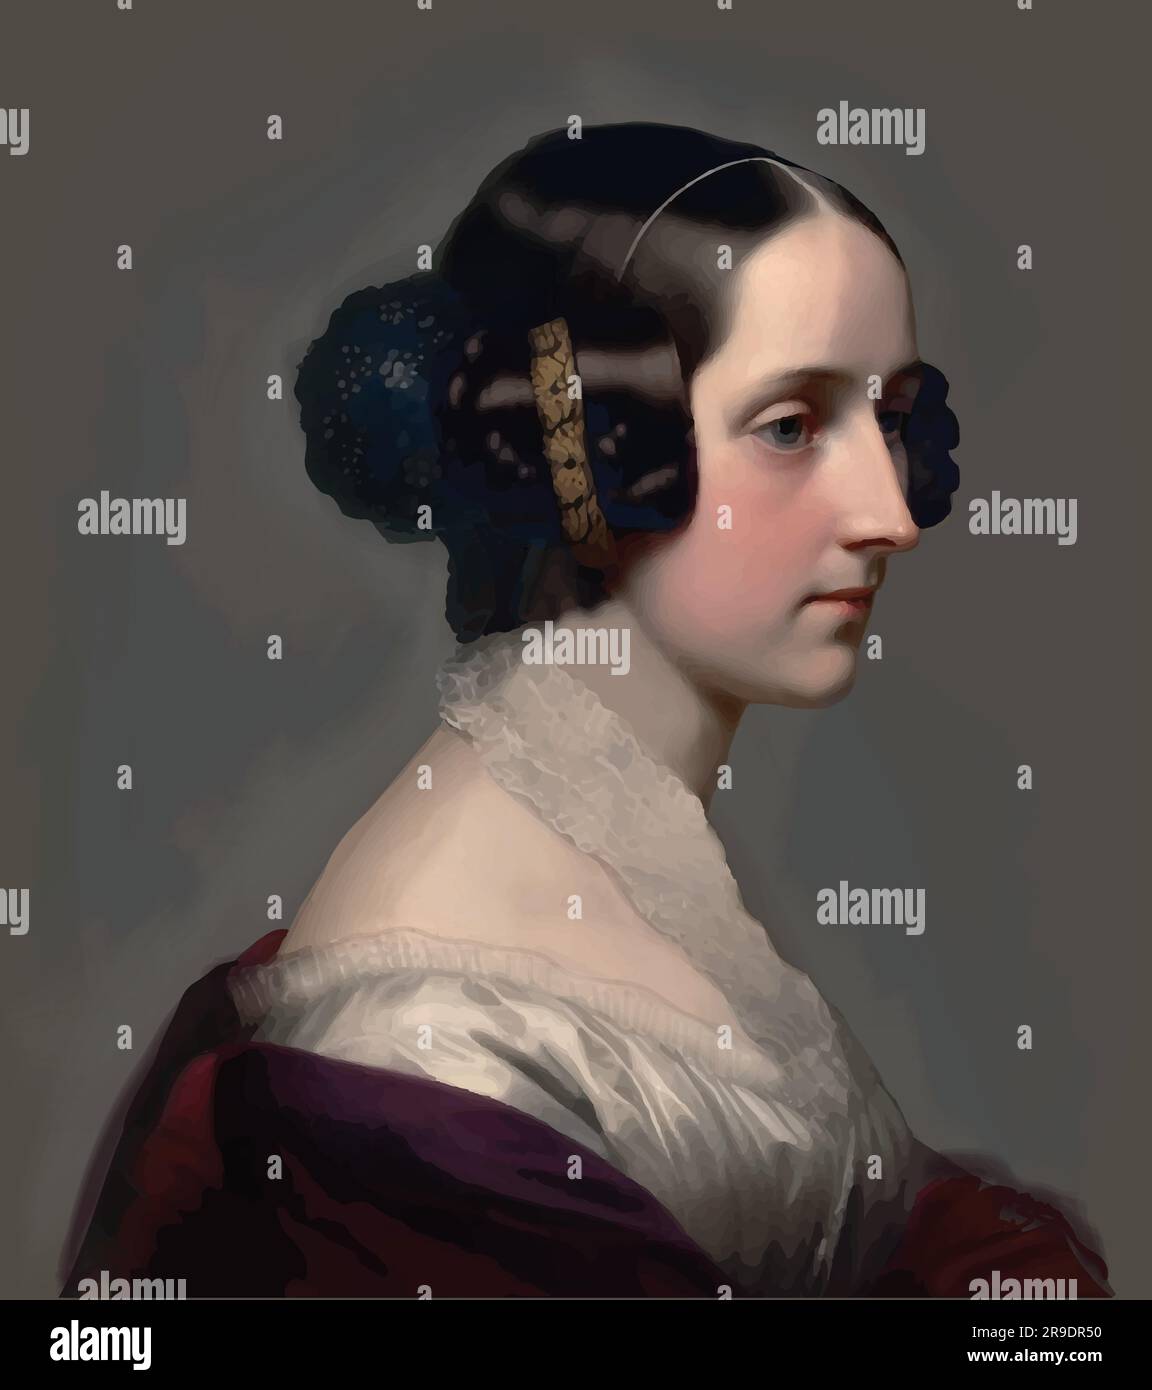 Vecteur du mathématicien du 19th siècle, Ada Lovelace, comtesse Lovelace (1815-1852) Illustration de Vecteur